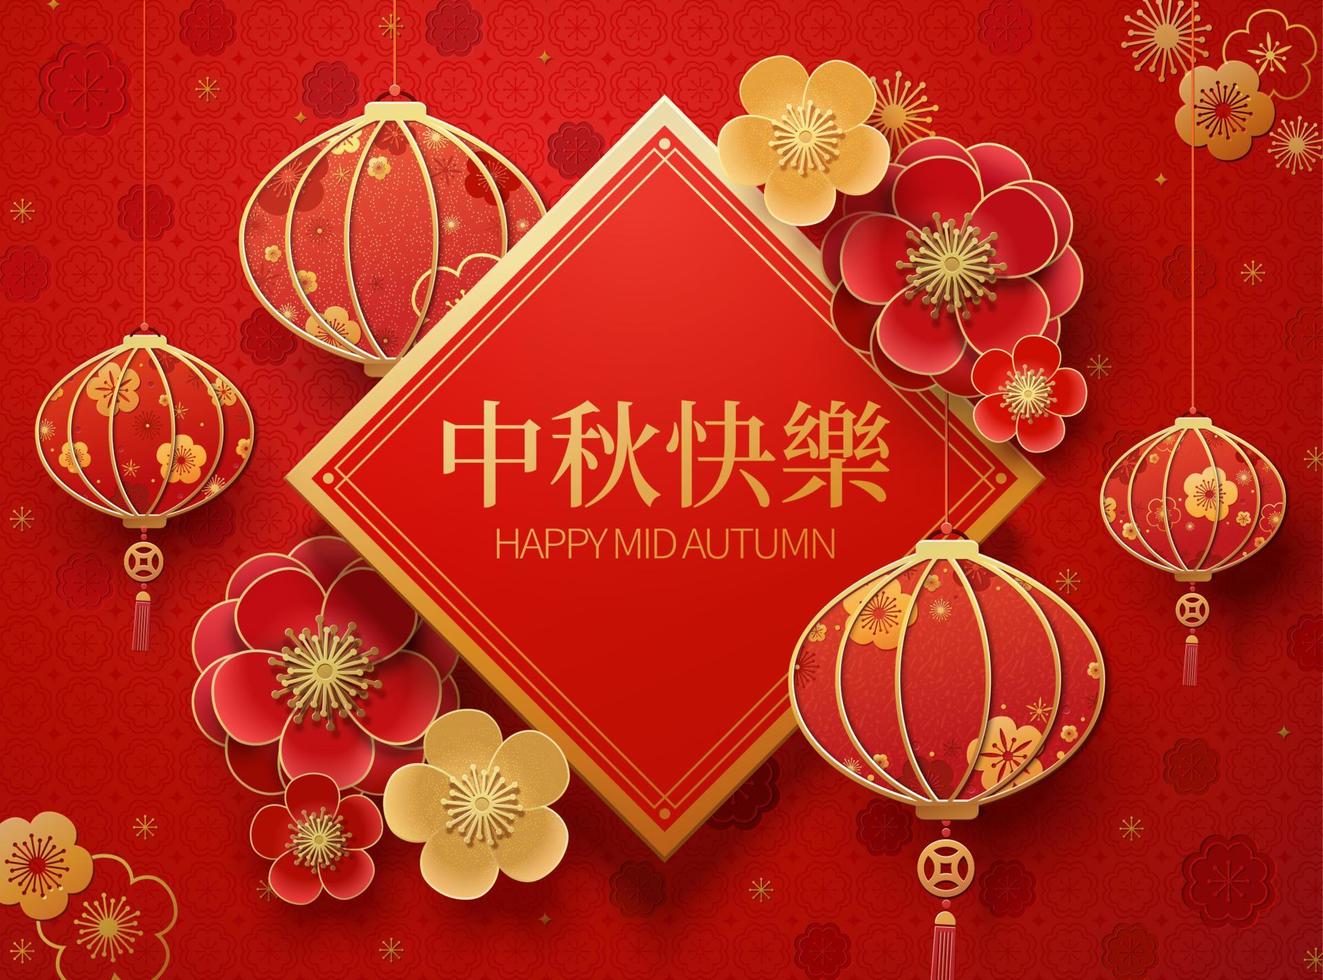 gelukkig midden herfst festival met hangende rood lantaarns en voorjaar couplet, vakantie naam geschreven in Chinese woorden vector